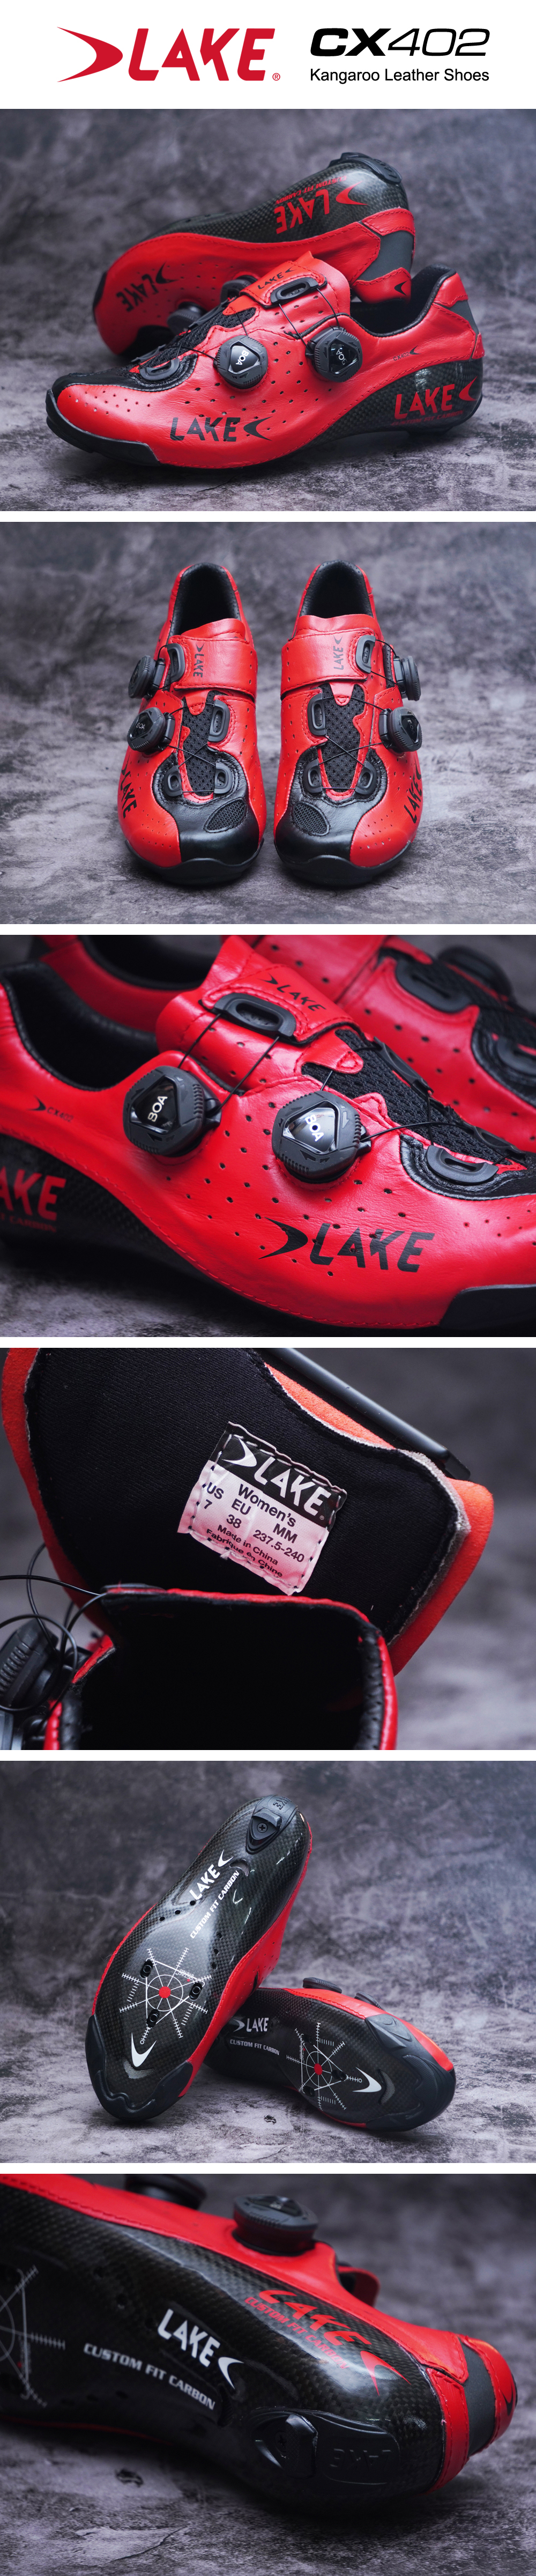 lake cycling shoes cx402